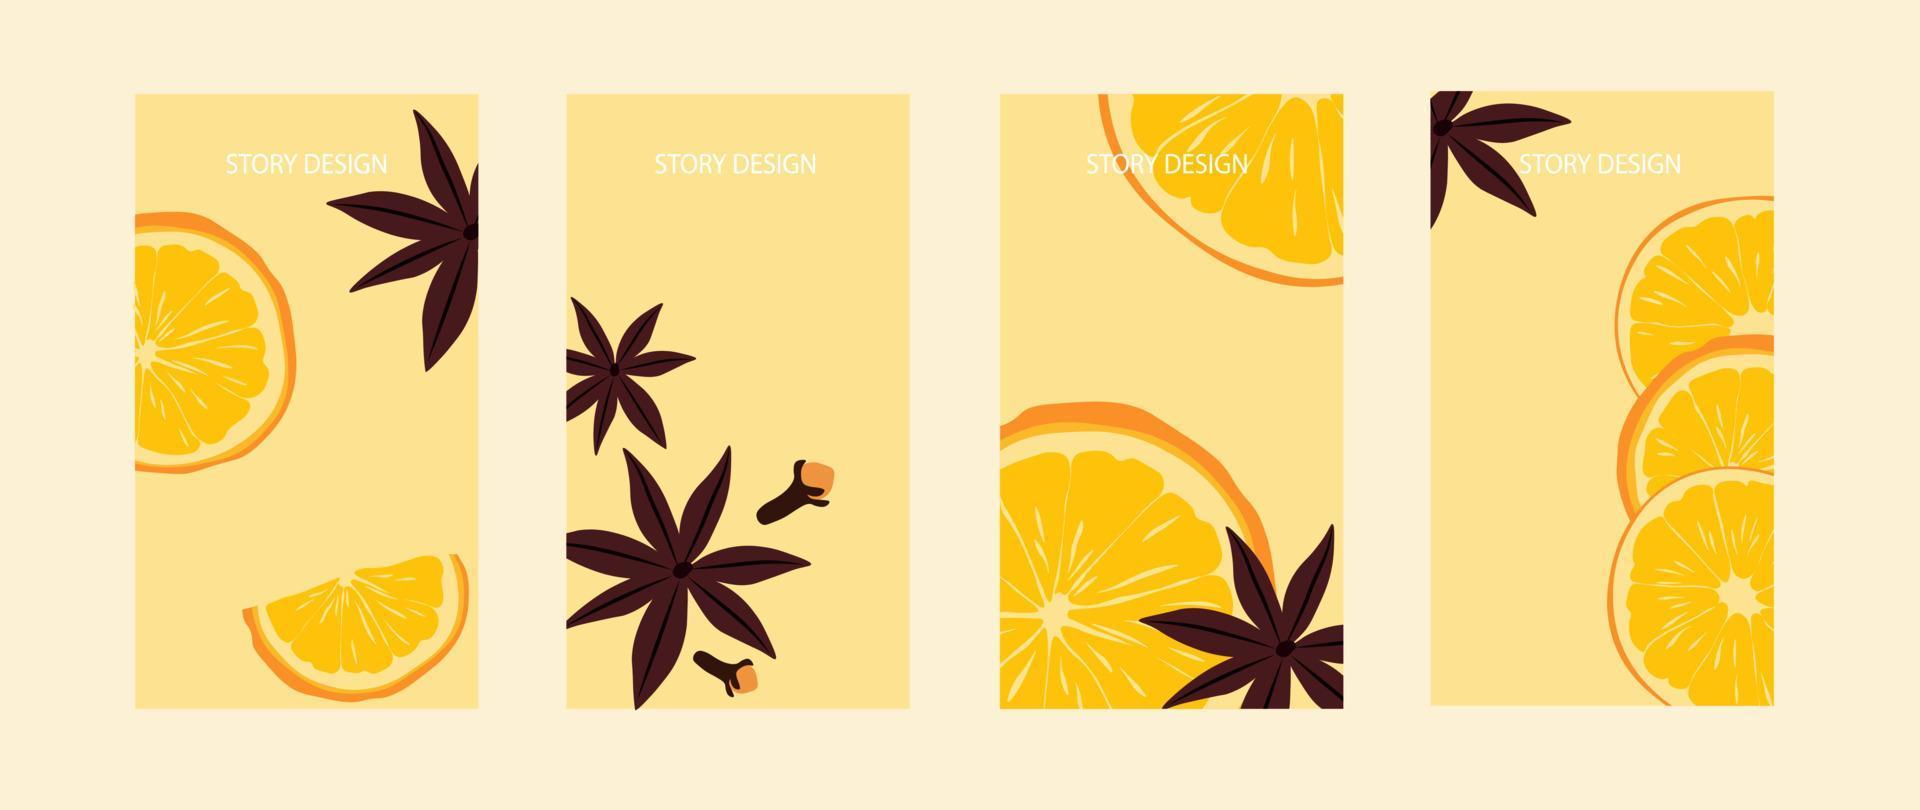 modello di storia del vin brulé per i social media, sfondo arancione con frutta, illustrazione vettoriale. una fetta di arancia, cannella e chiodi di garofano. vettore